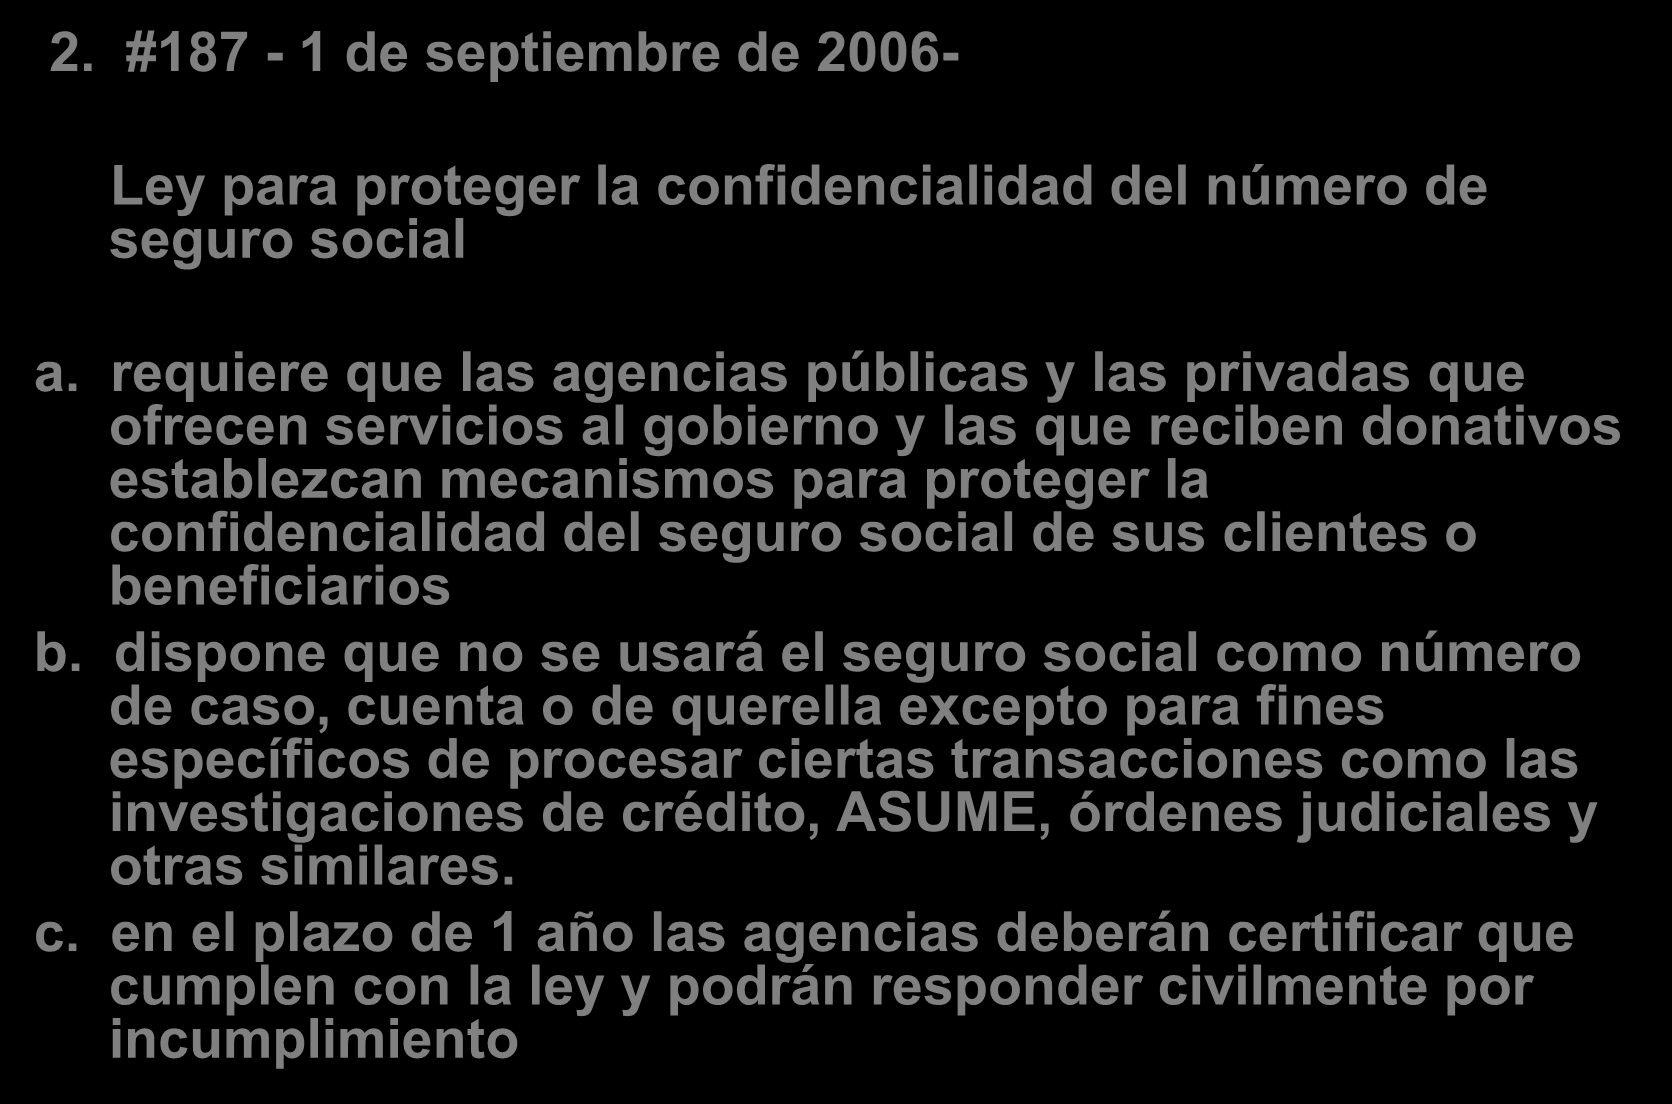 Nuevas leyes aprobadas en Puerto Rico 2. #187-1 de septiembre de 2006- Ley para proteger la confidencialidad del número de seguro social a.